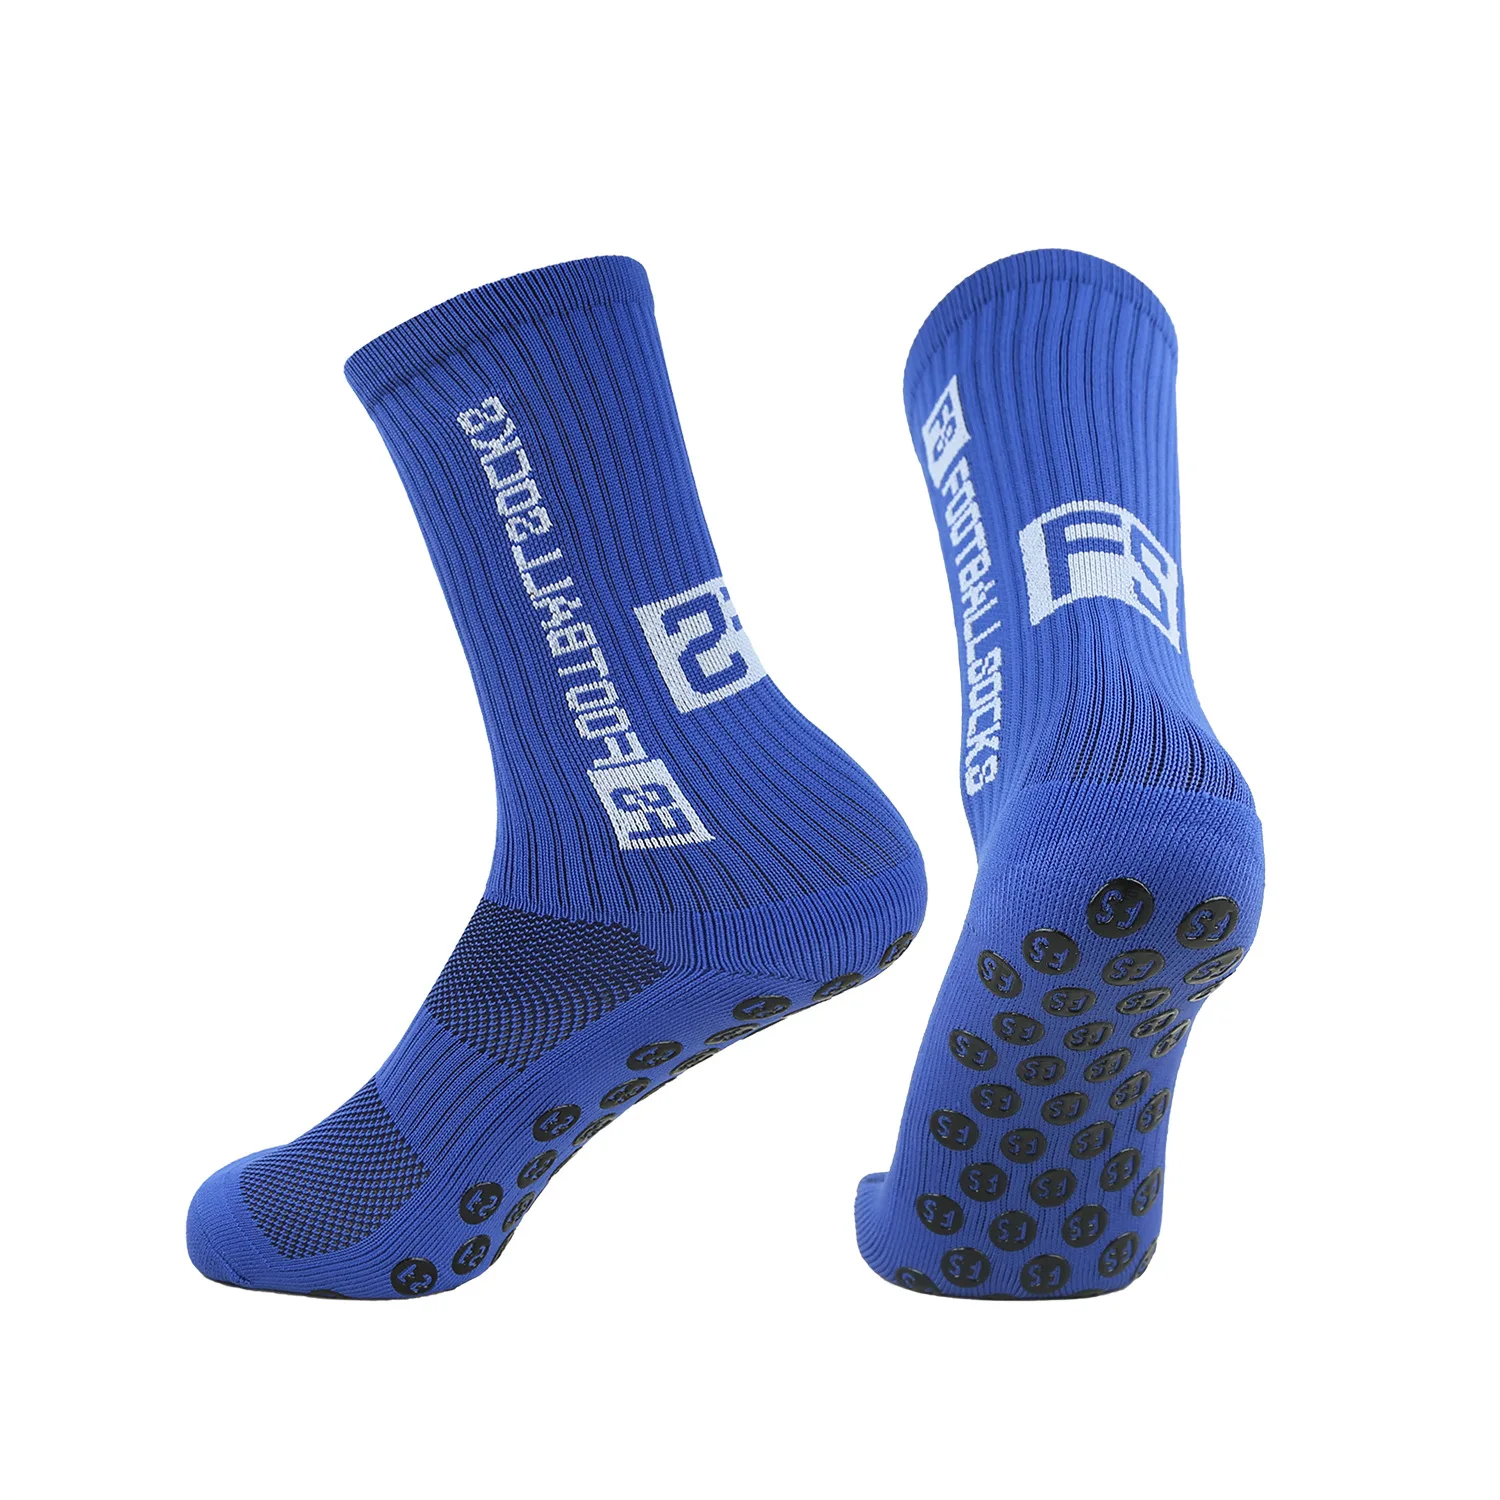 Football socks, men's mid length basketball socks, anti slip and wear-resistant sports socks, glue dispensing